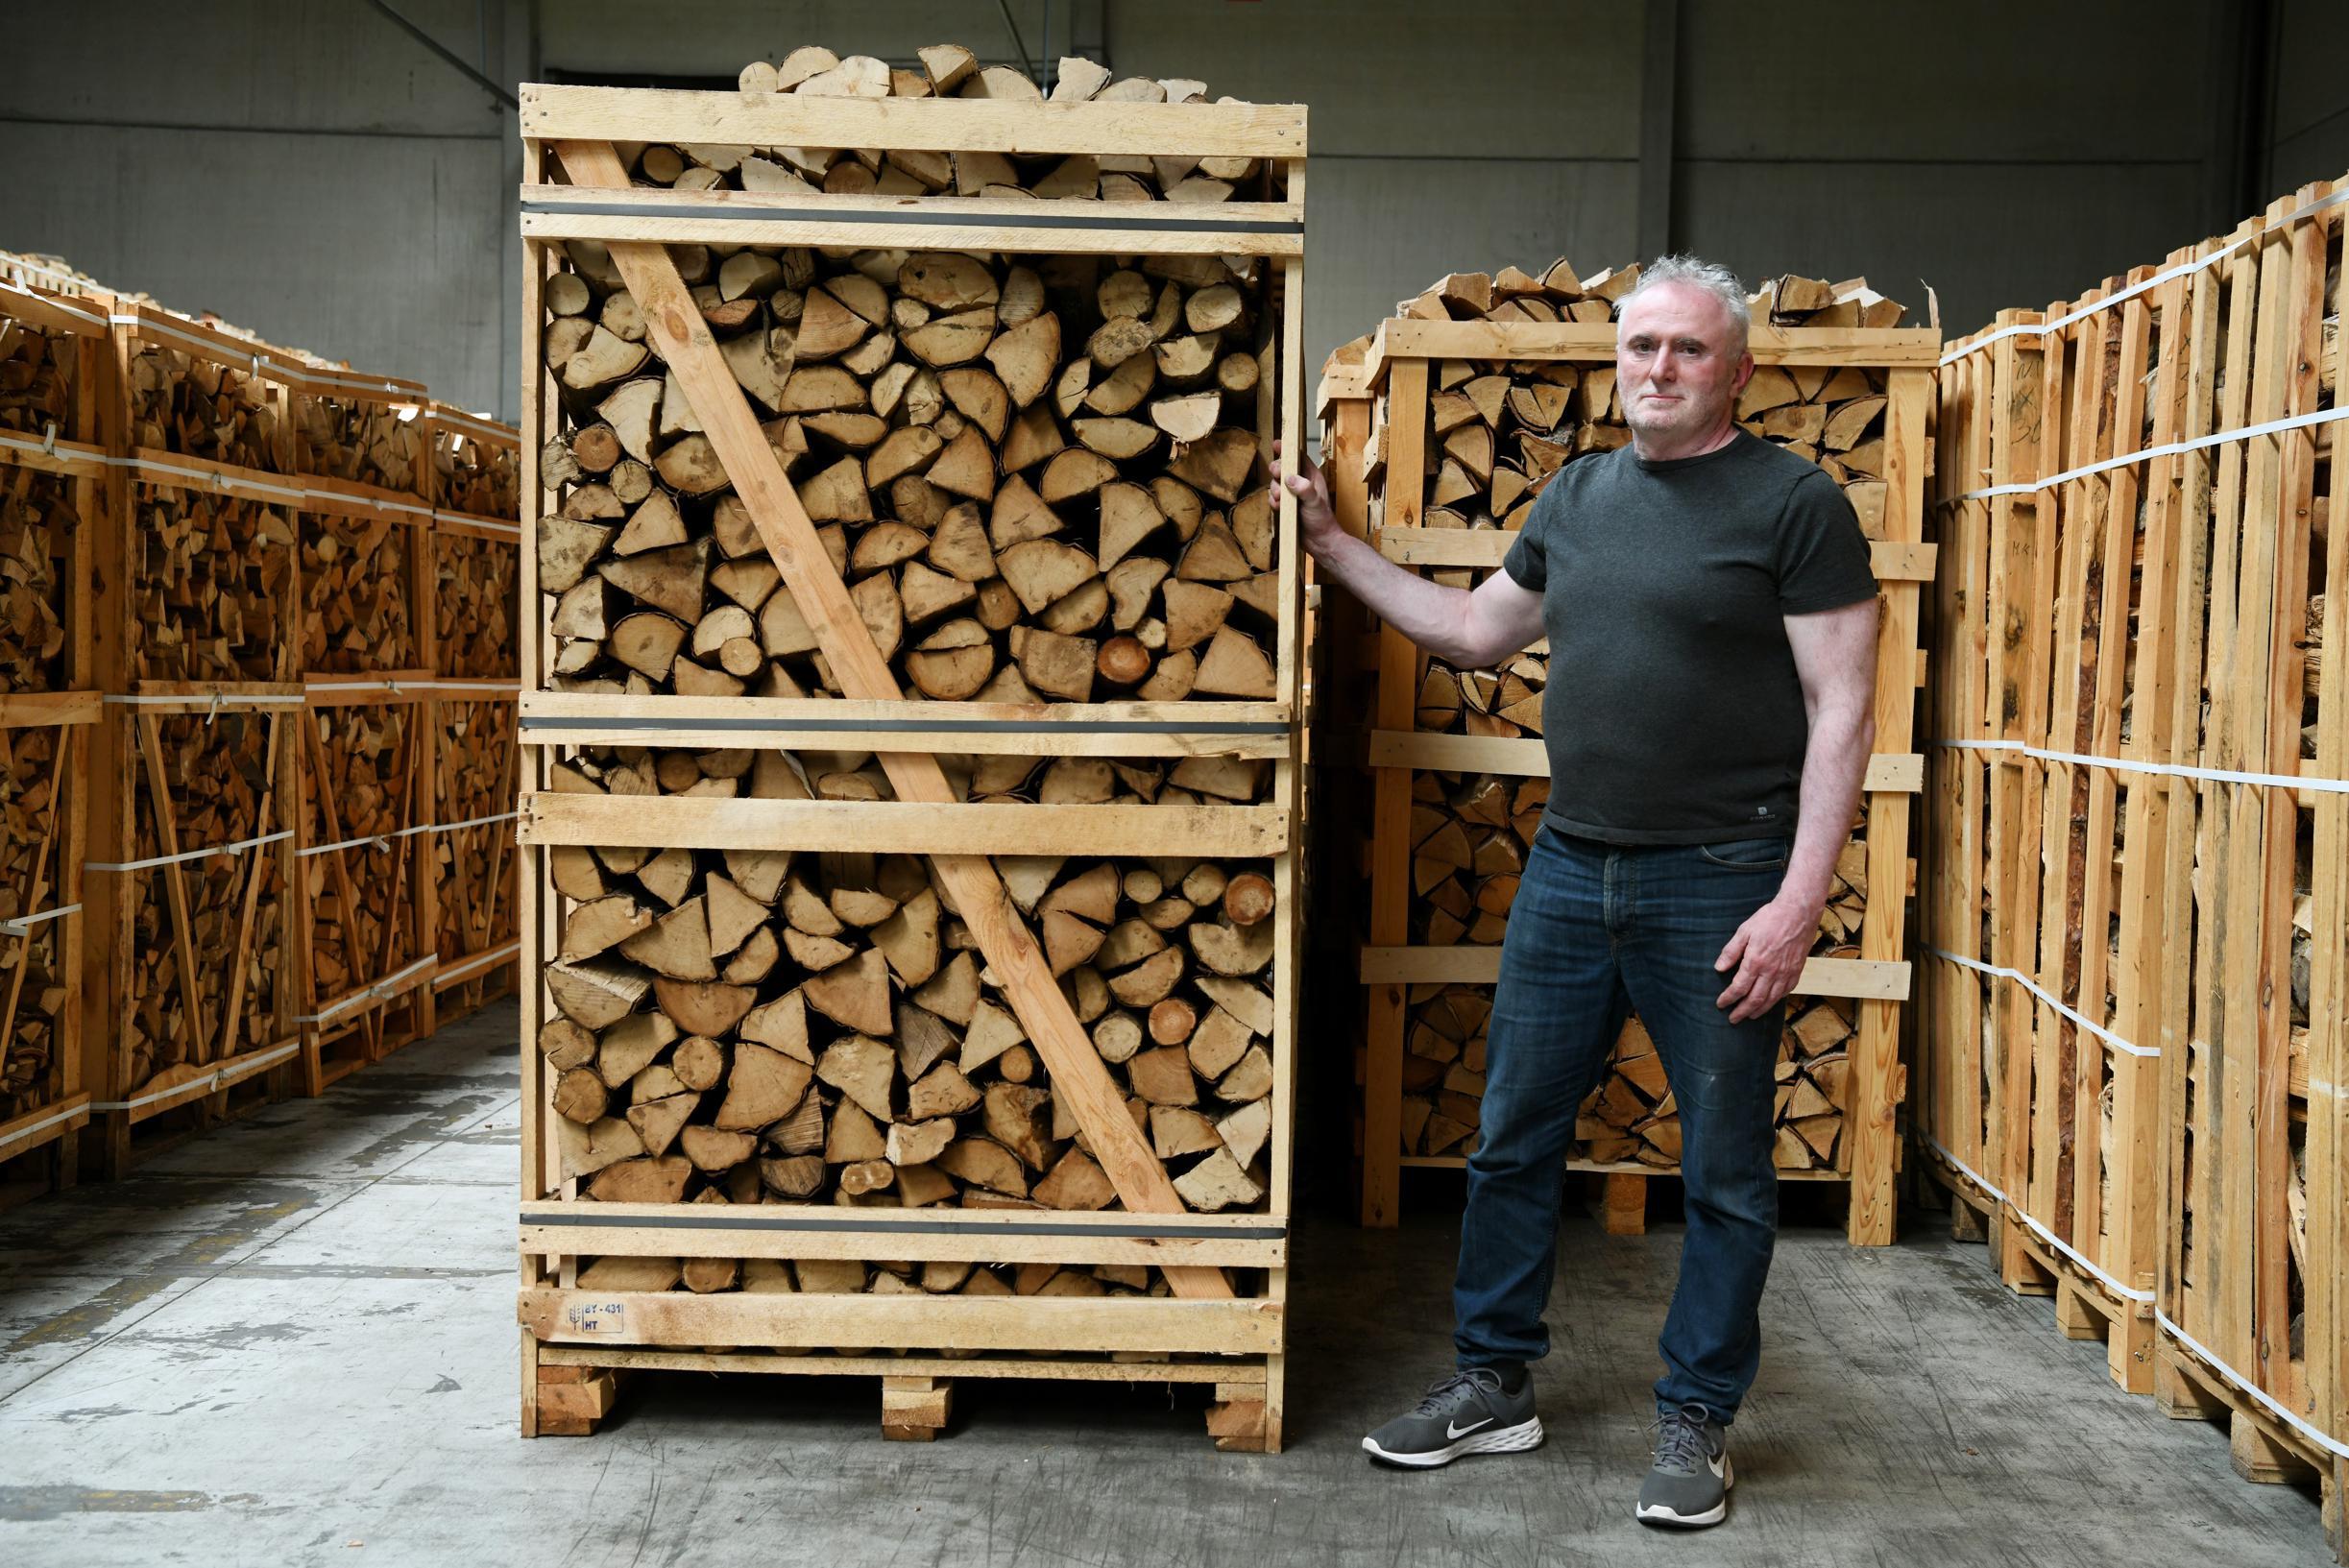 Pilfer limoen breken Opnieuw stoken met houtkachel? Dat kan probleem worden in strenge winter |  Het Nieuwsblad Mobile